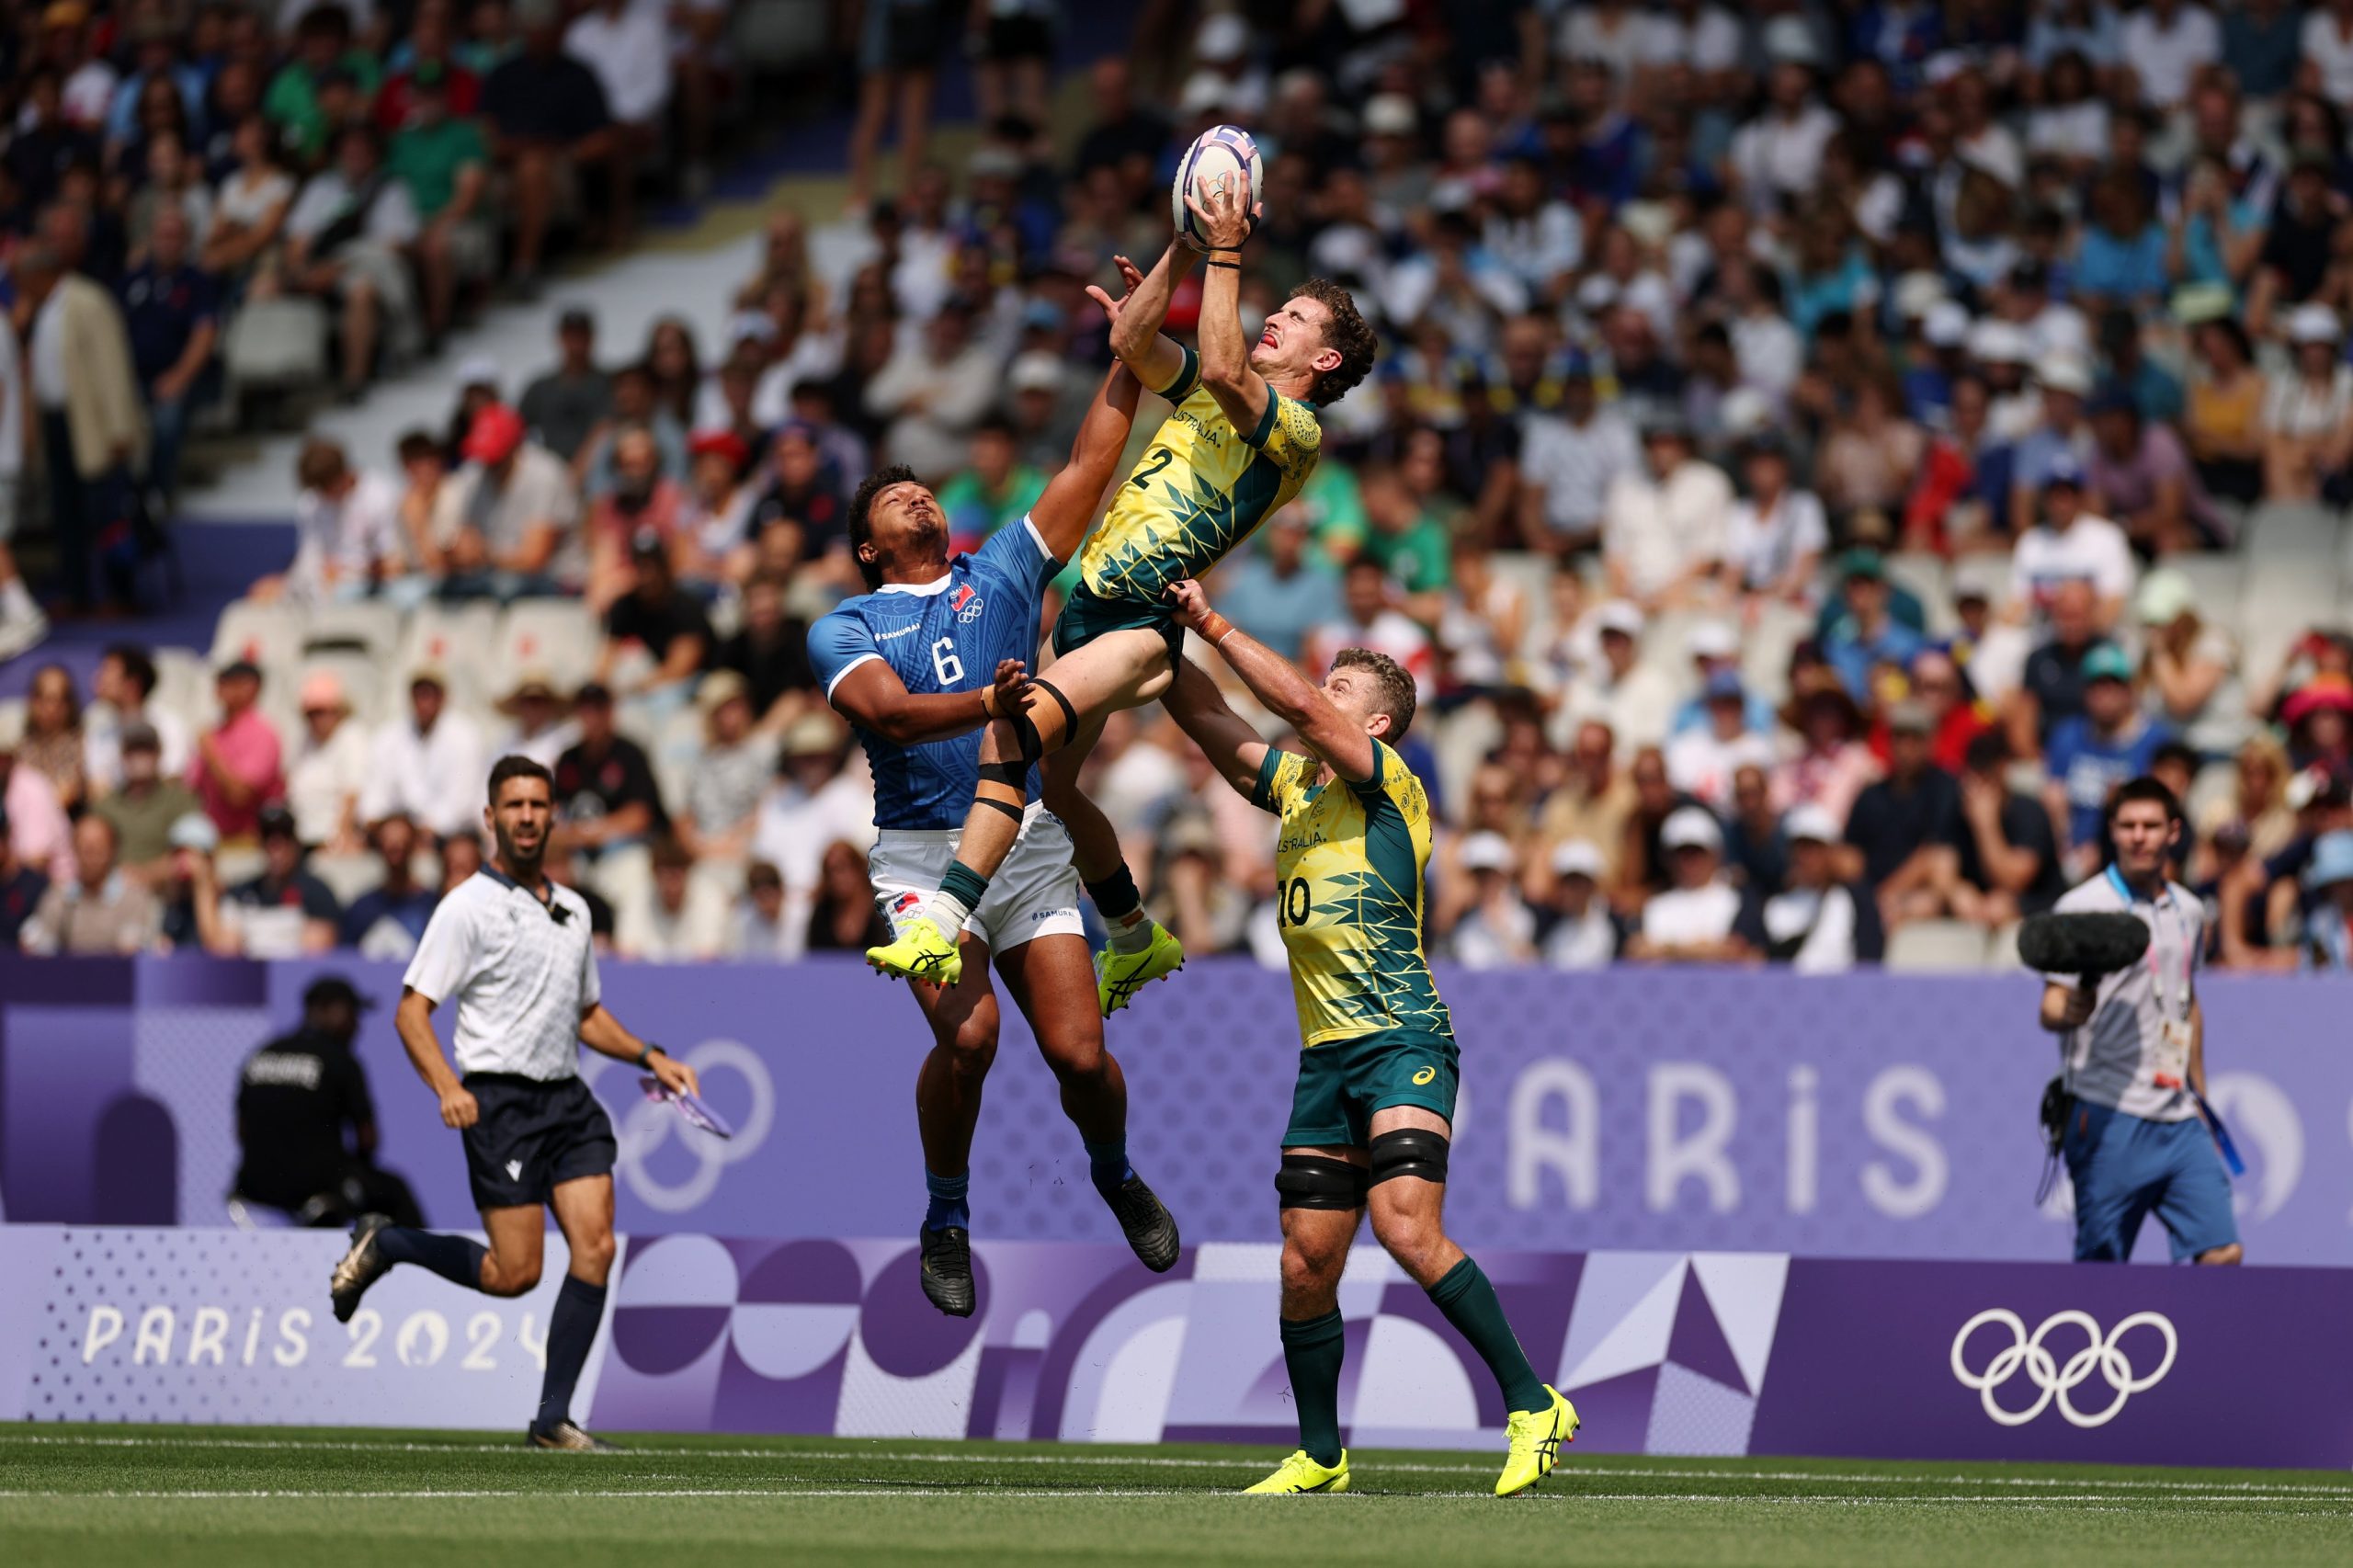 Quartas-de-final do rugby sevens são definidas depois de seis jogos; confira. Foto: Olimpíadas | Divulgação